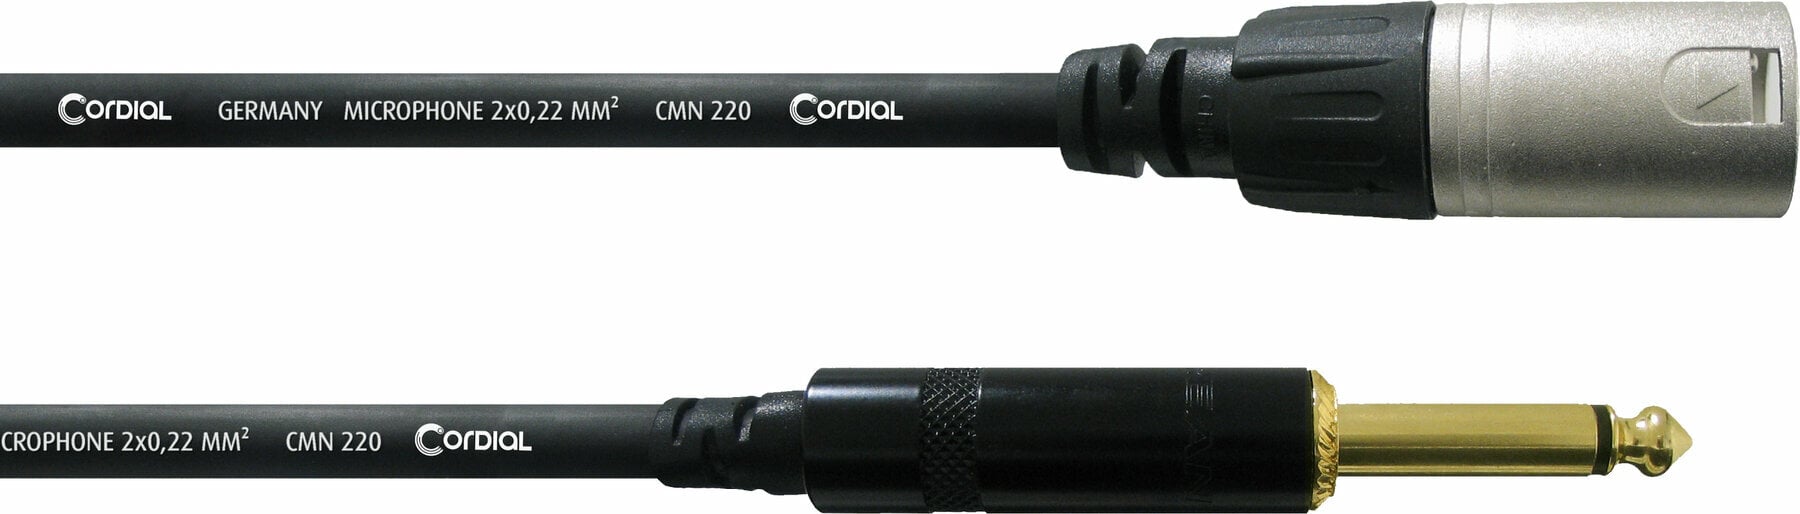 Câble pour microphone Cordial CCM 7,5 MP Noir 7,5 m